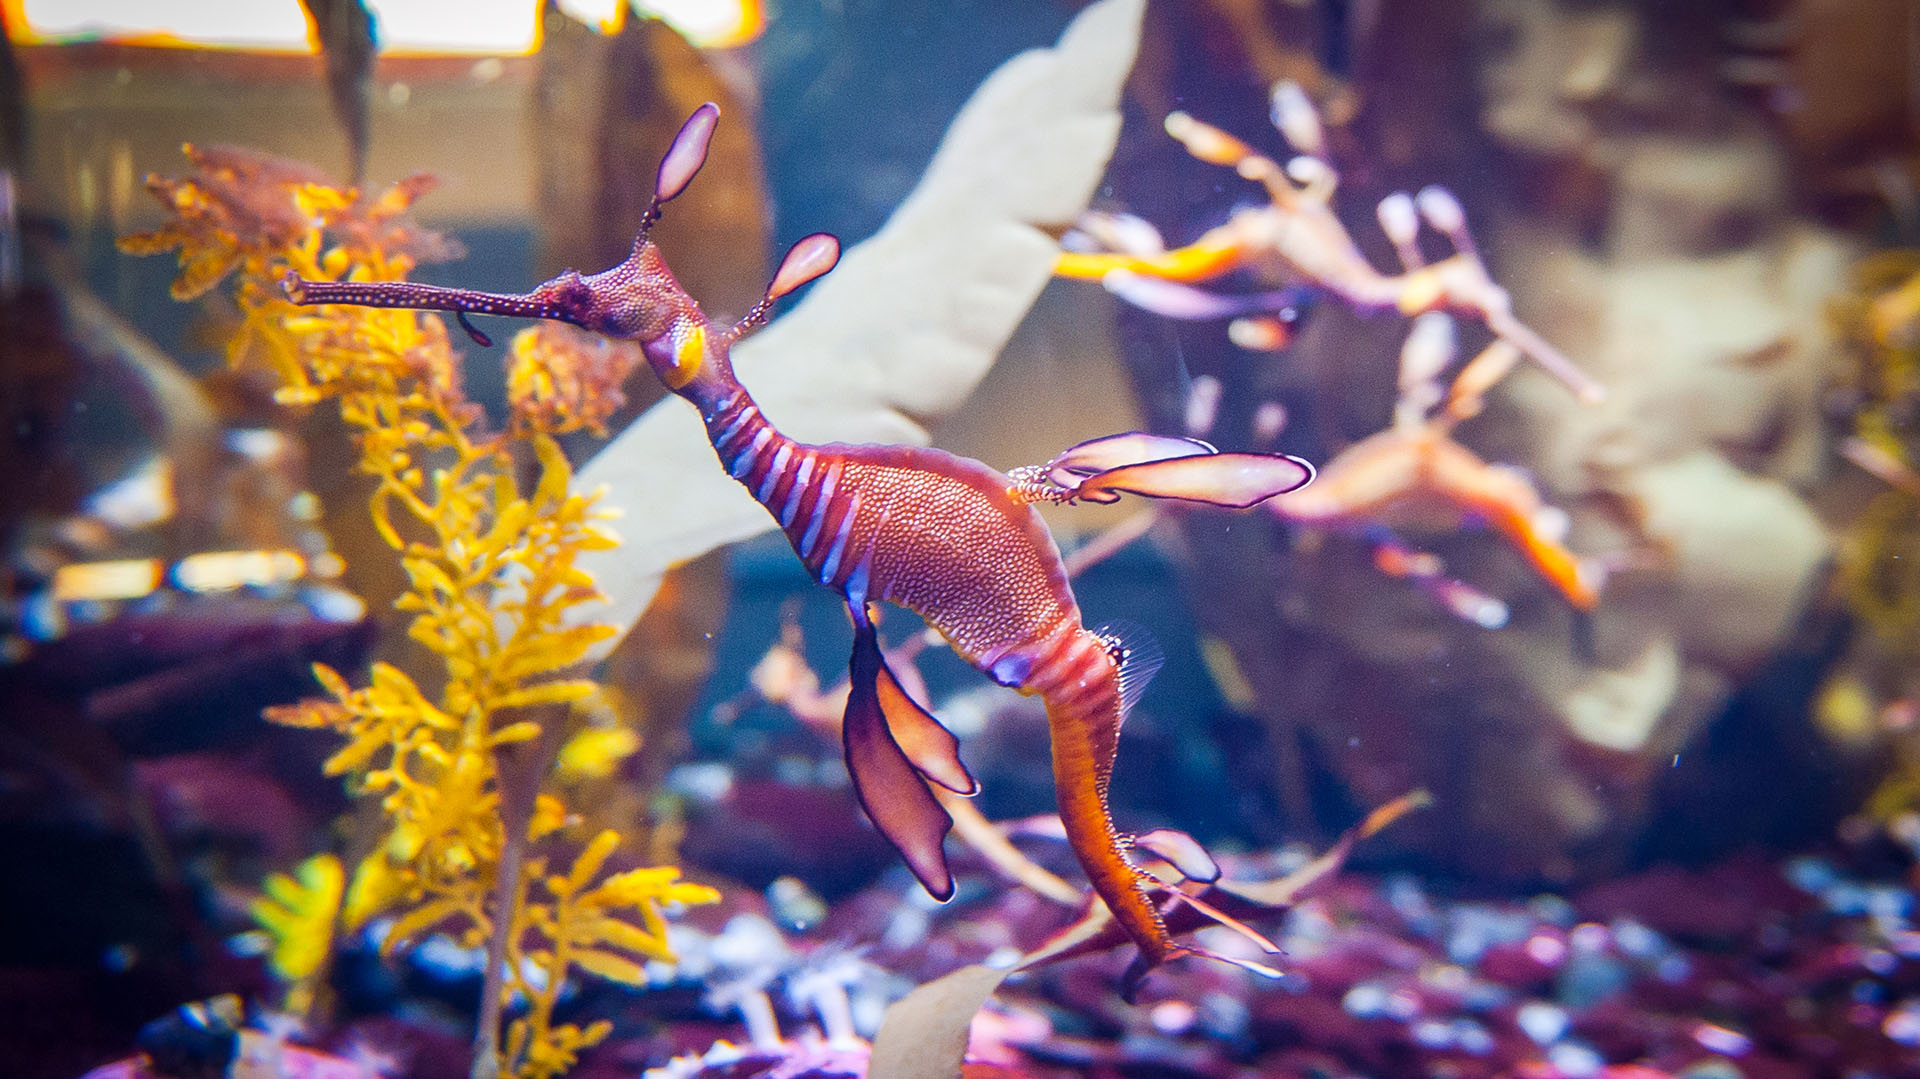 Otro tipo de dragón marino son los llamados Weedy (maleza), que son más aerodinámicos y más coloridos, con rayas moradas y lunares amarillos (Getty Images)